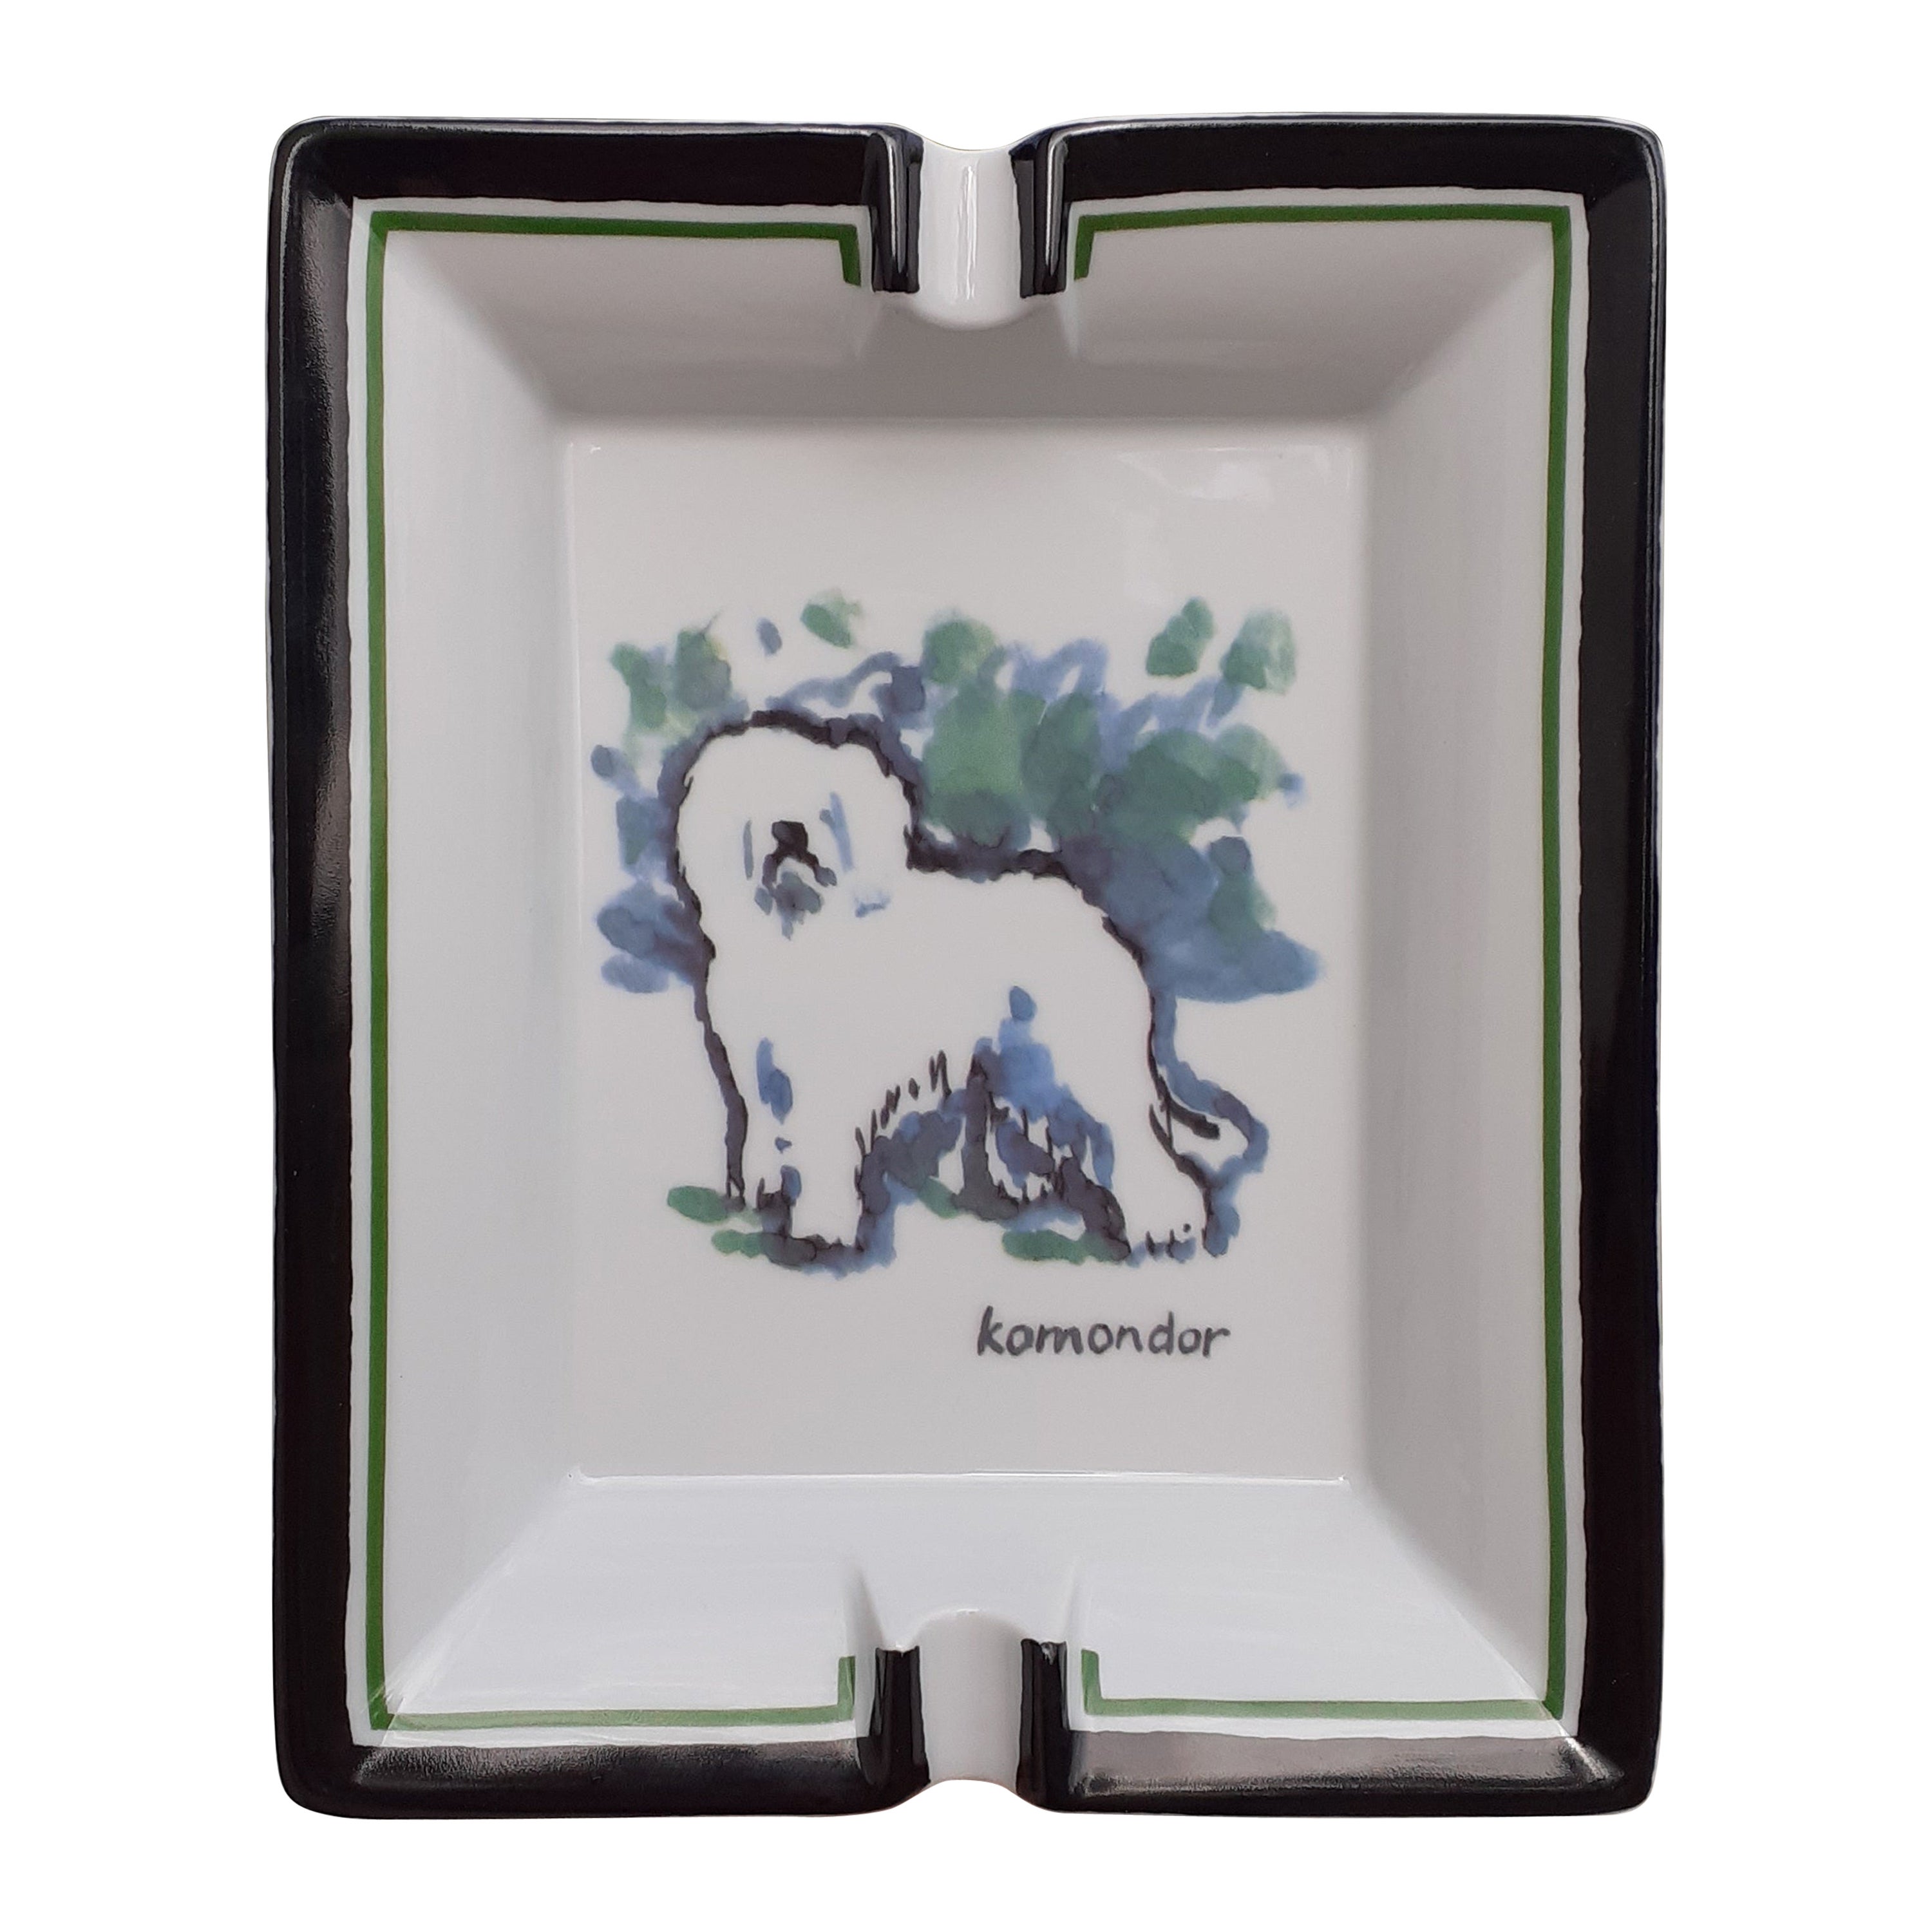 Exceptionnel Hermès Komondor Dog Print en porcelaine RARE